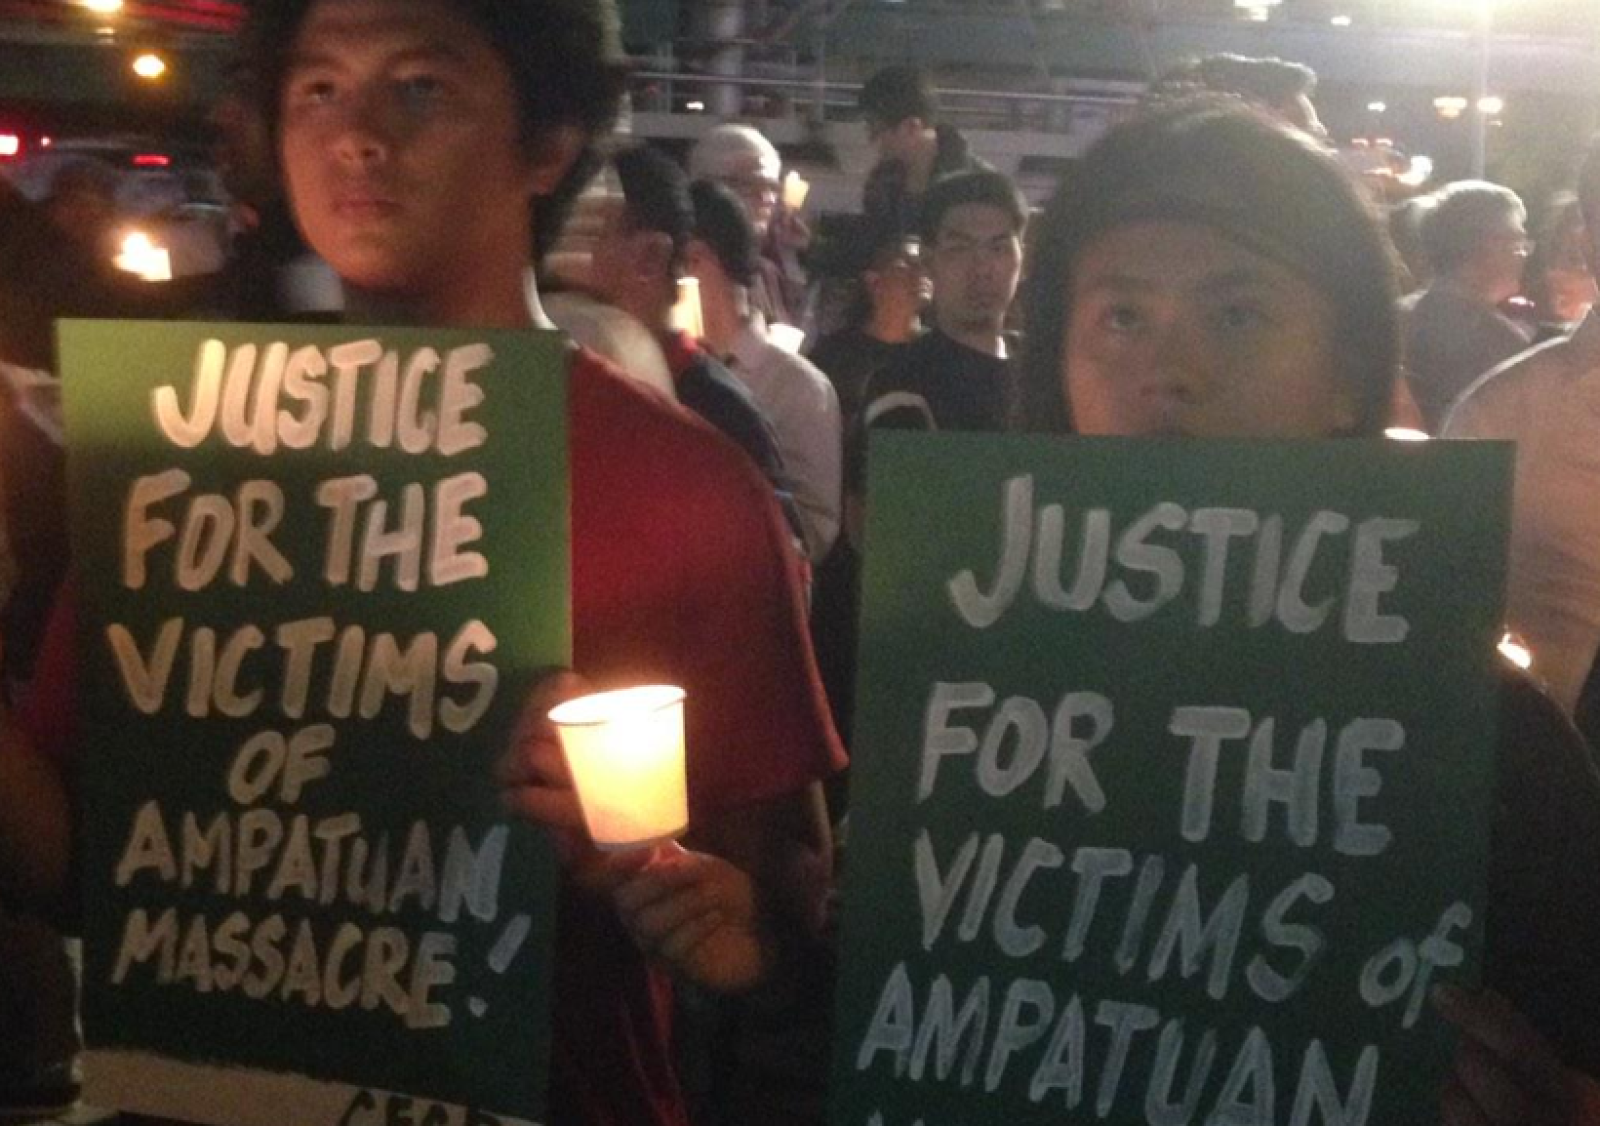 Des gens lancent des appels à la justice lors de la veille aux chandelles à Manille, le 23 novembre 2014